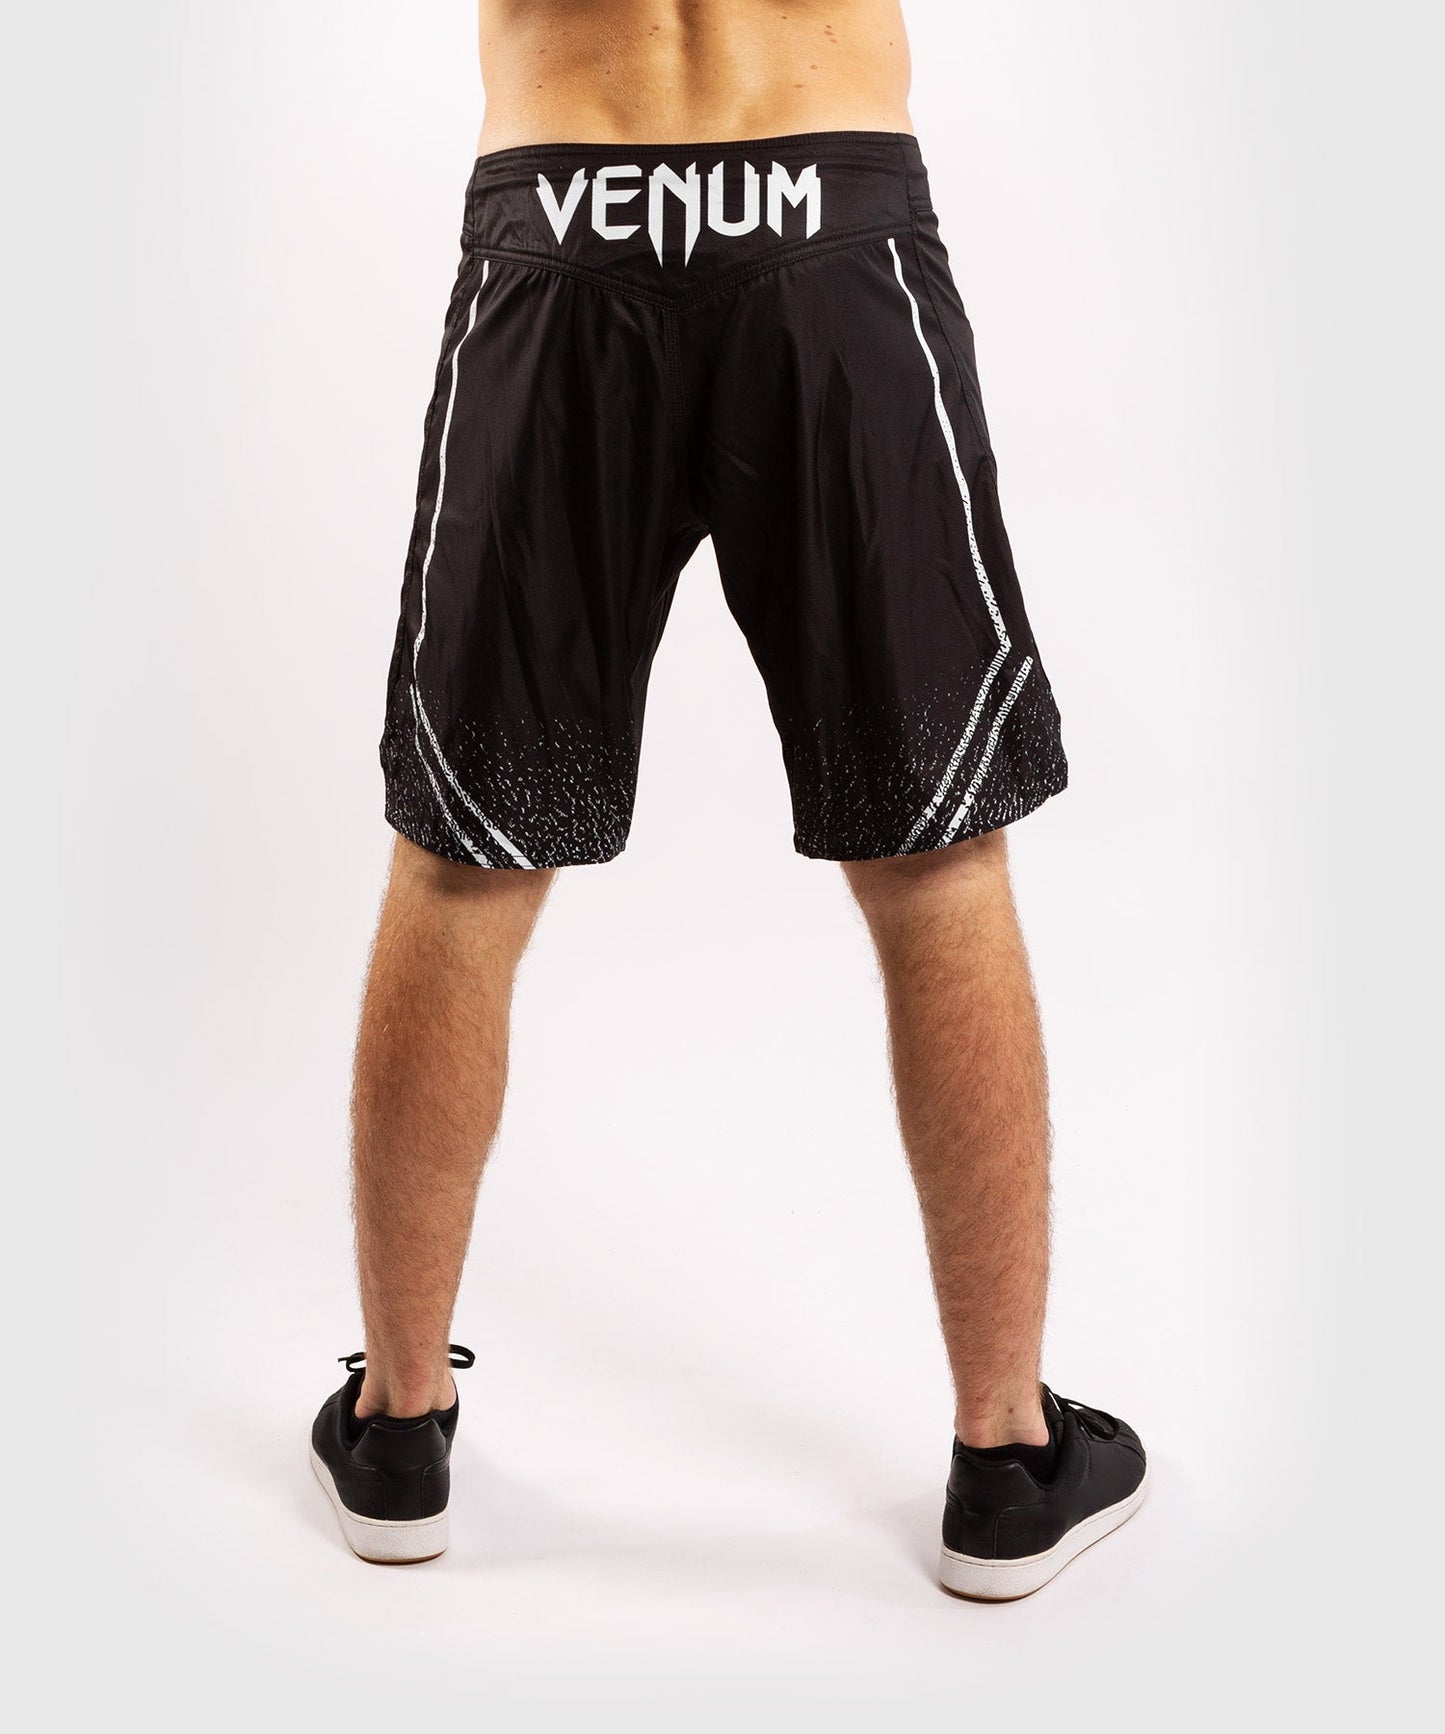 Venum Signature Fightshorts - Black/White